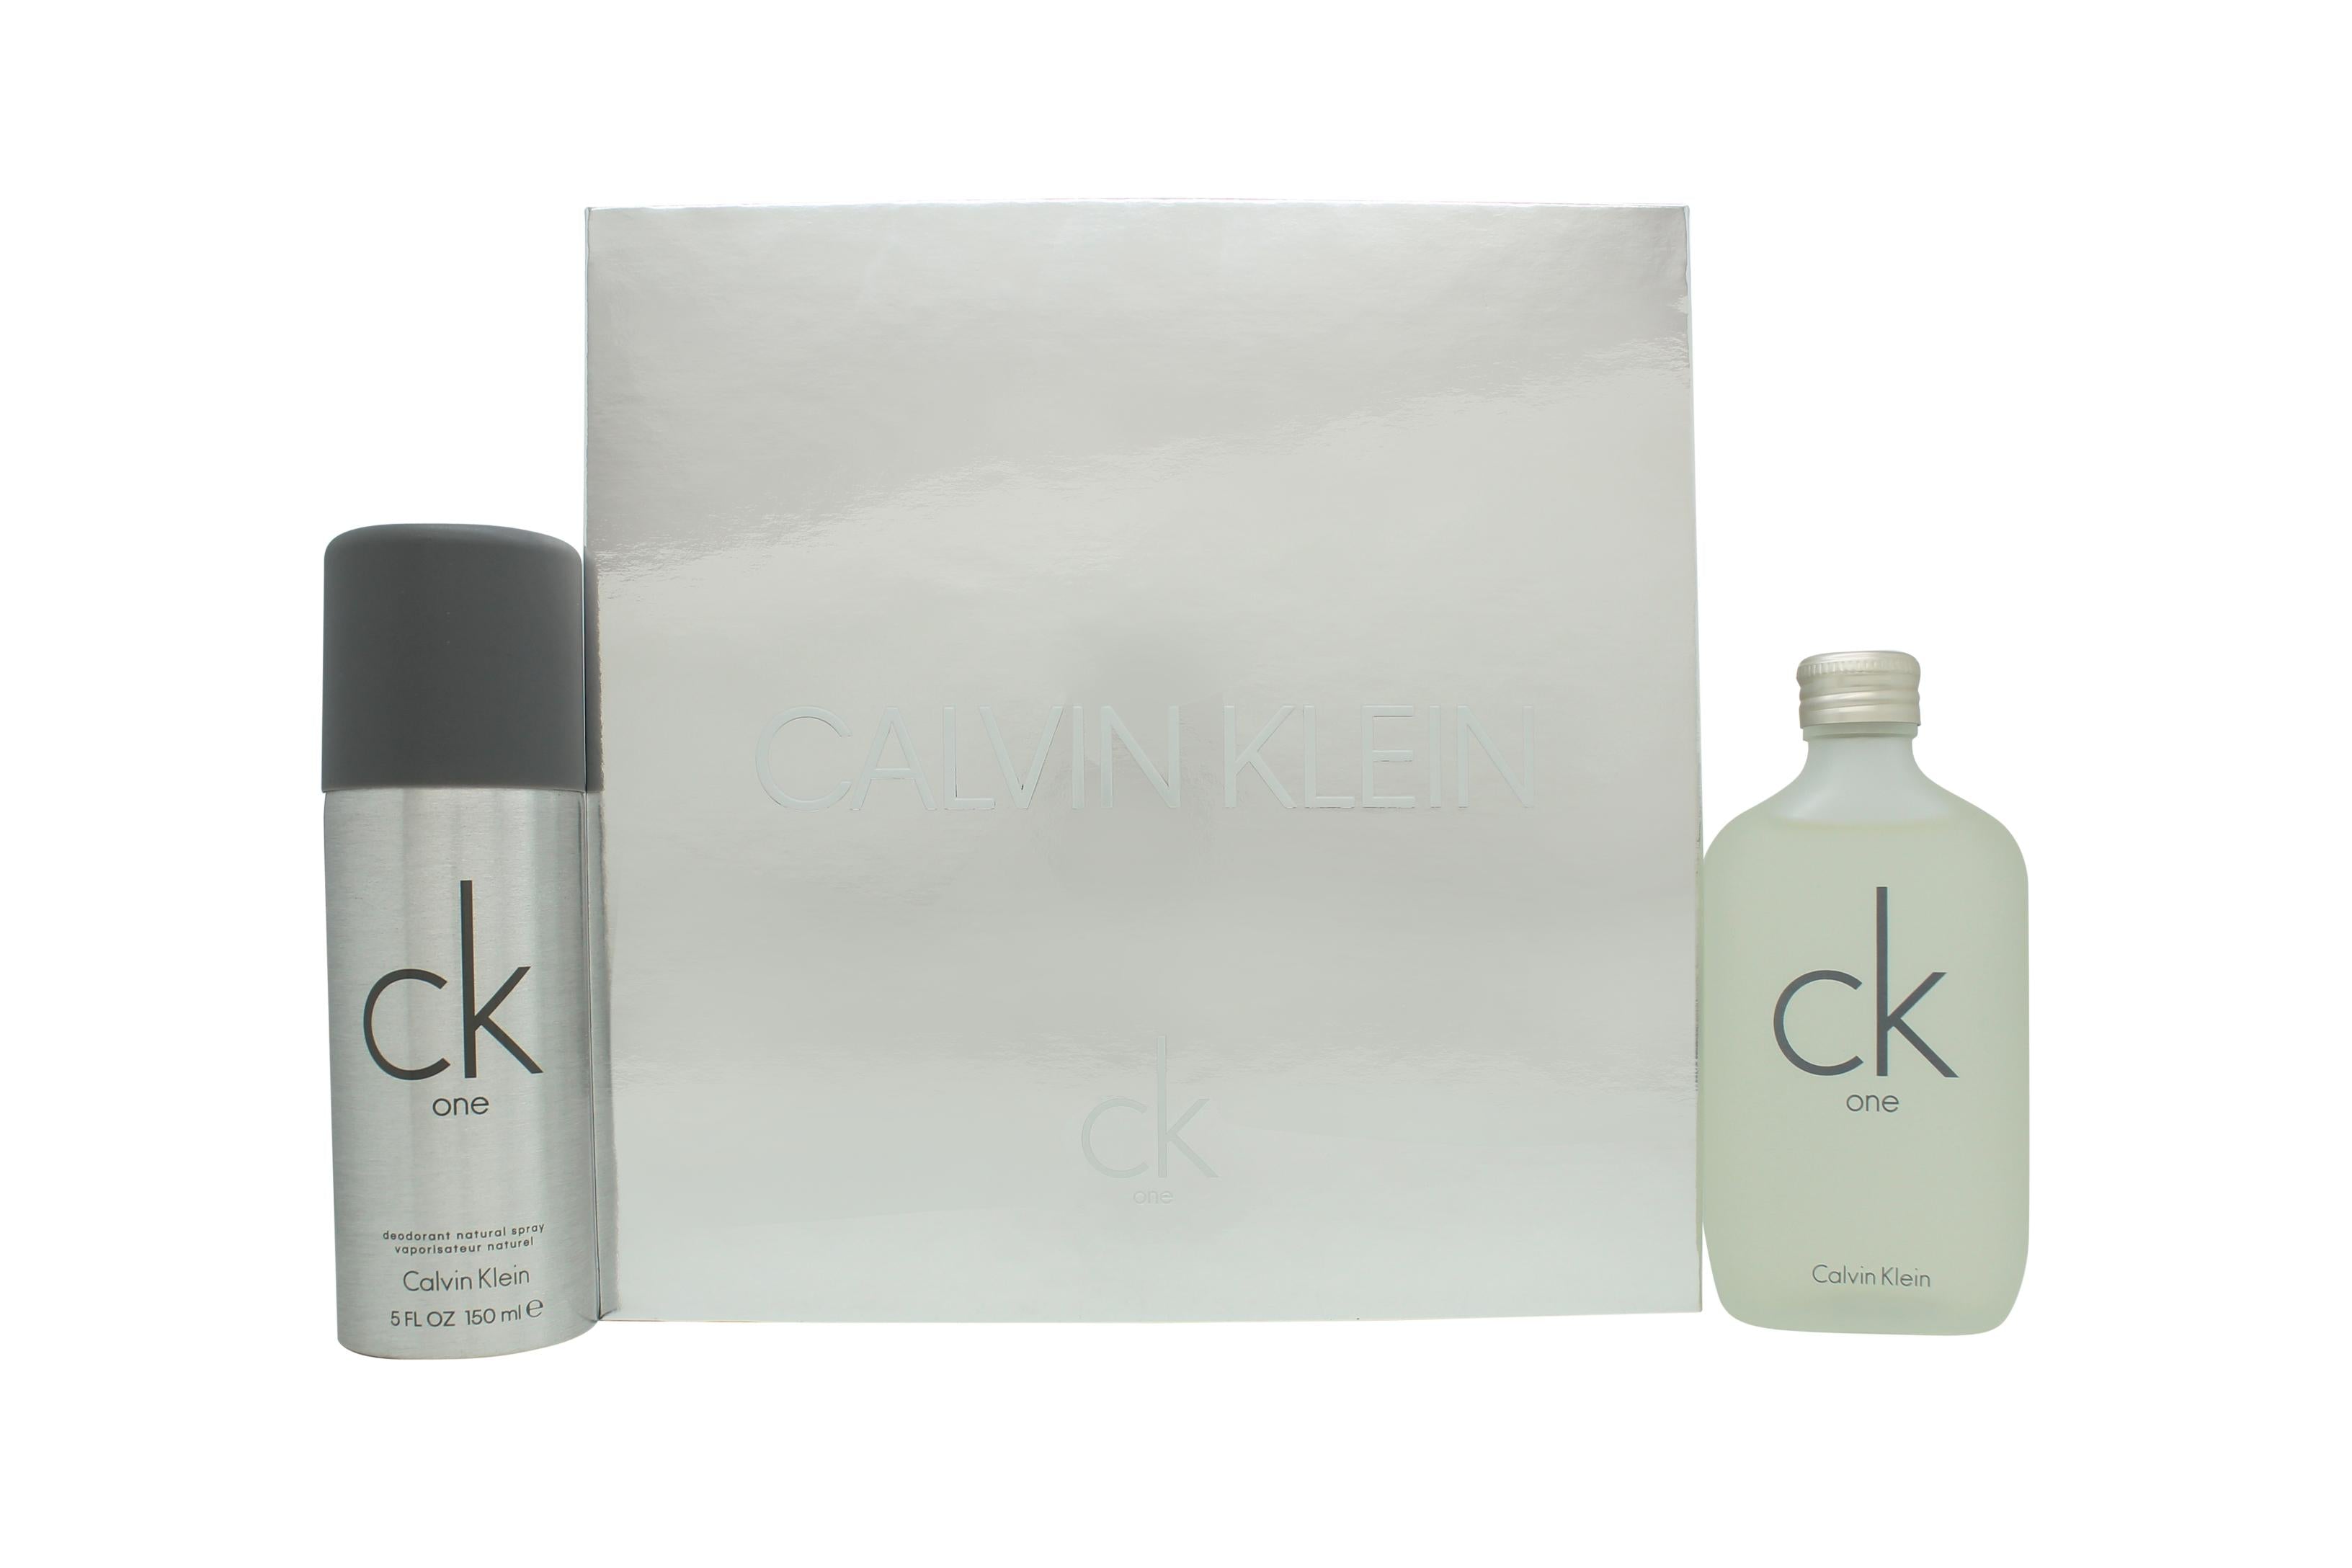 View Calvin Klein CK One Presentset 100ml EDT 150ml Deodorant Spray information